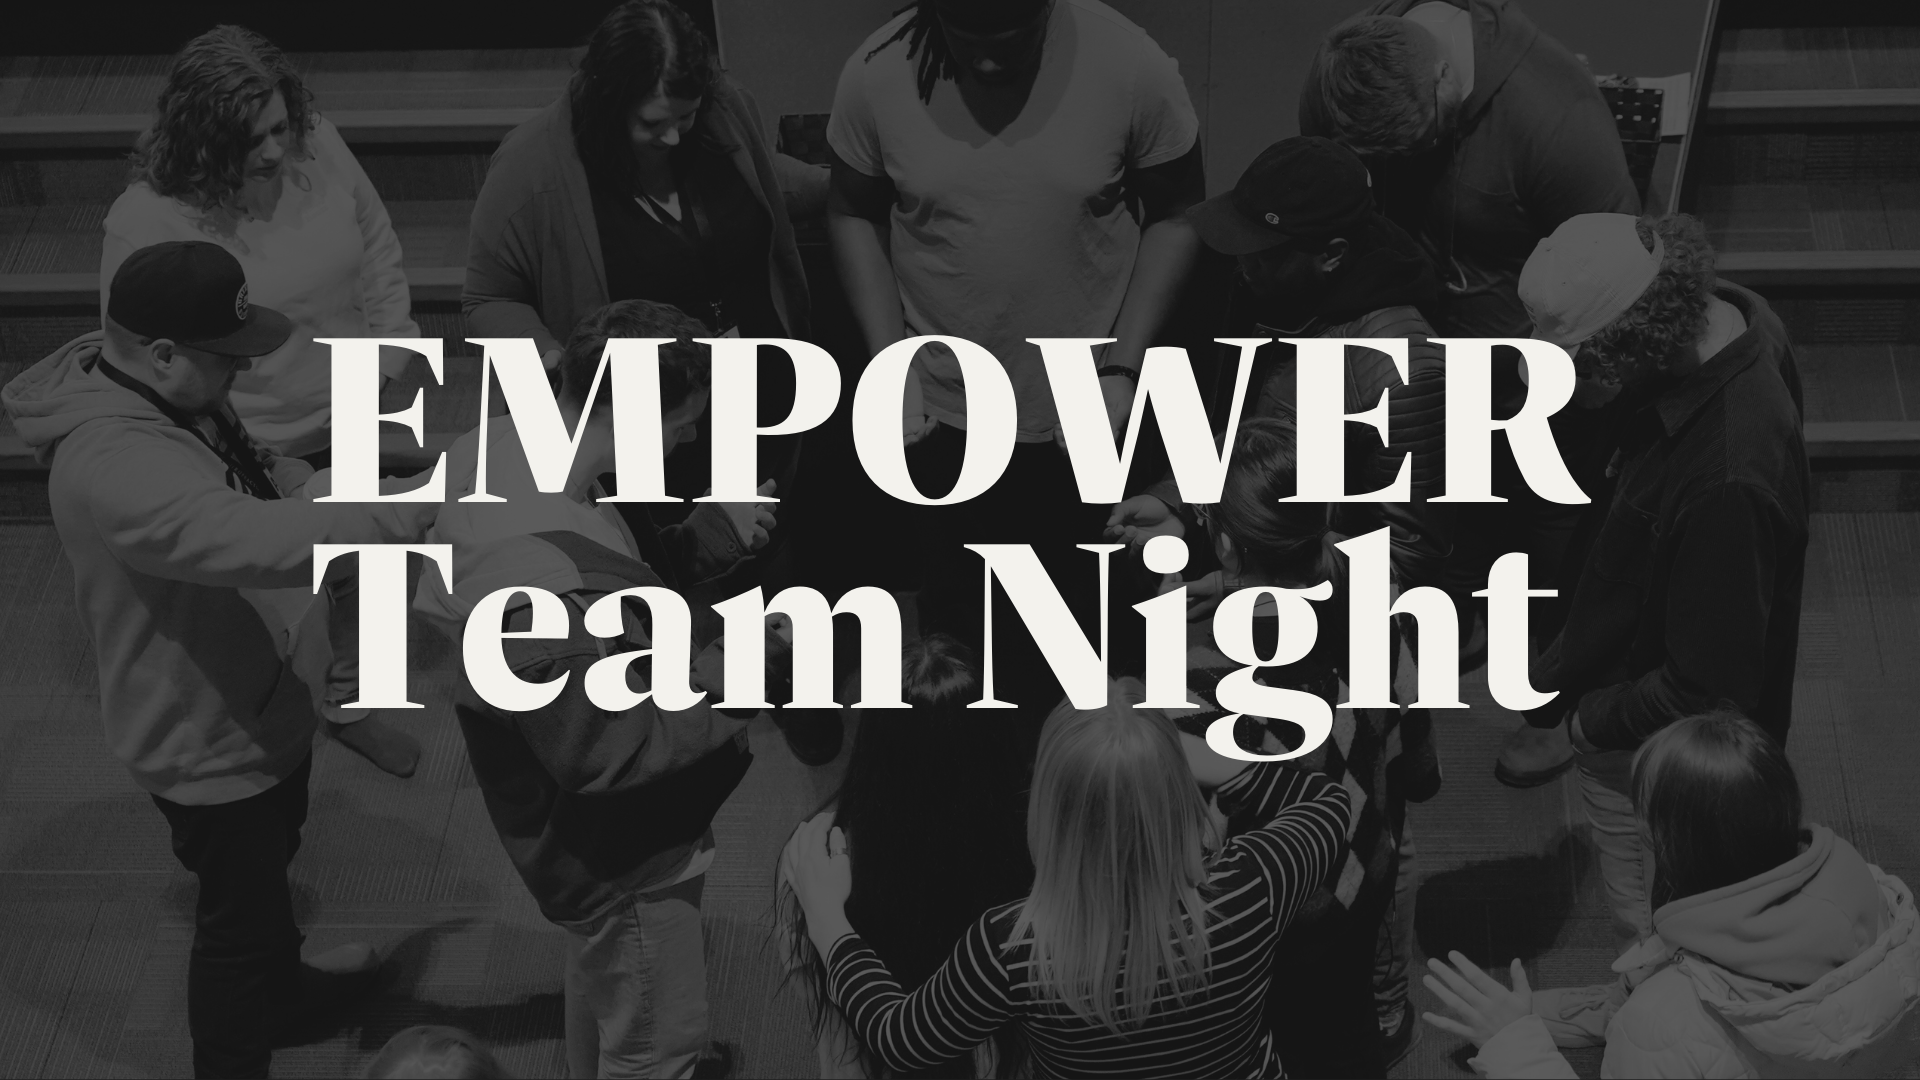 May 28: Empower Team Night